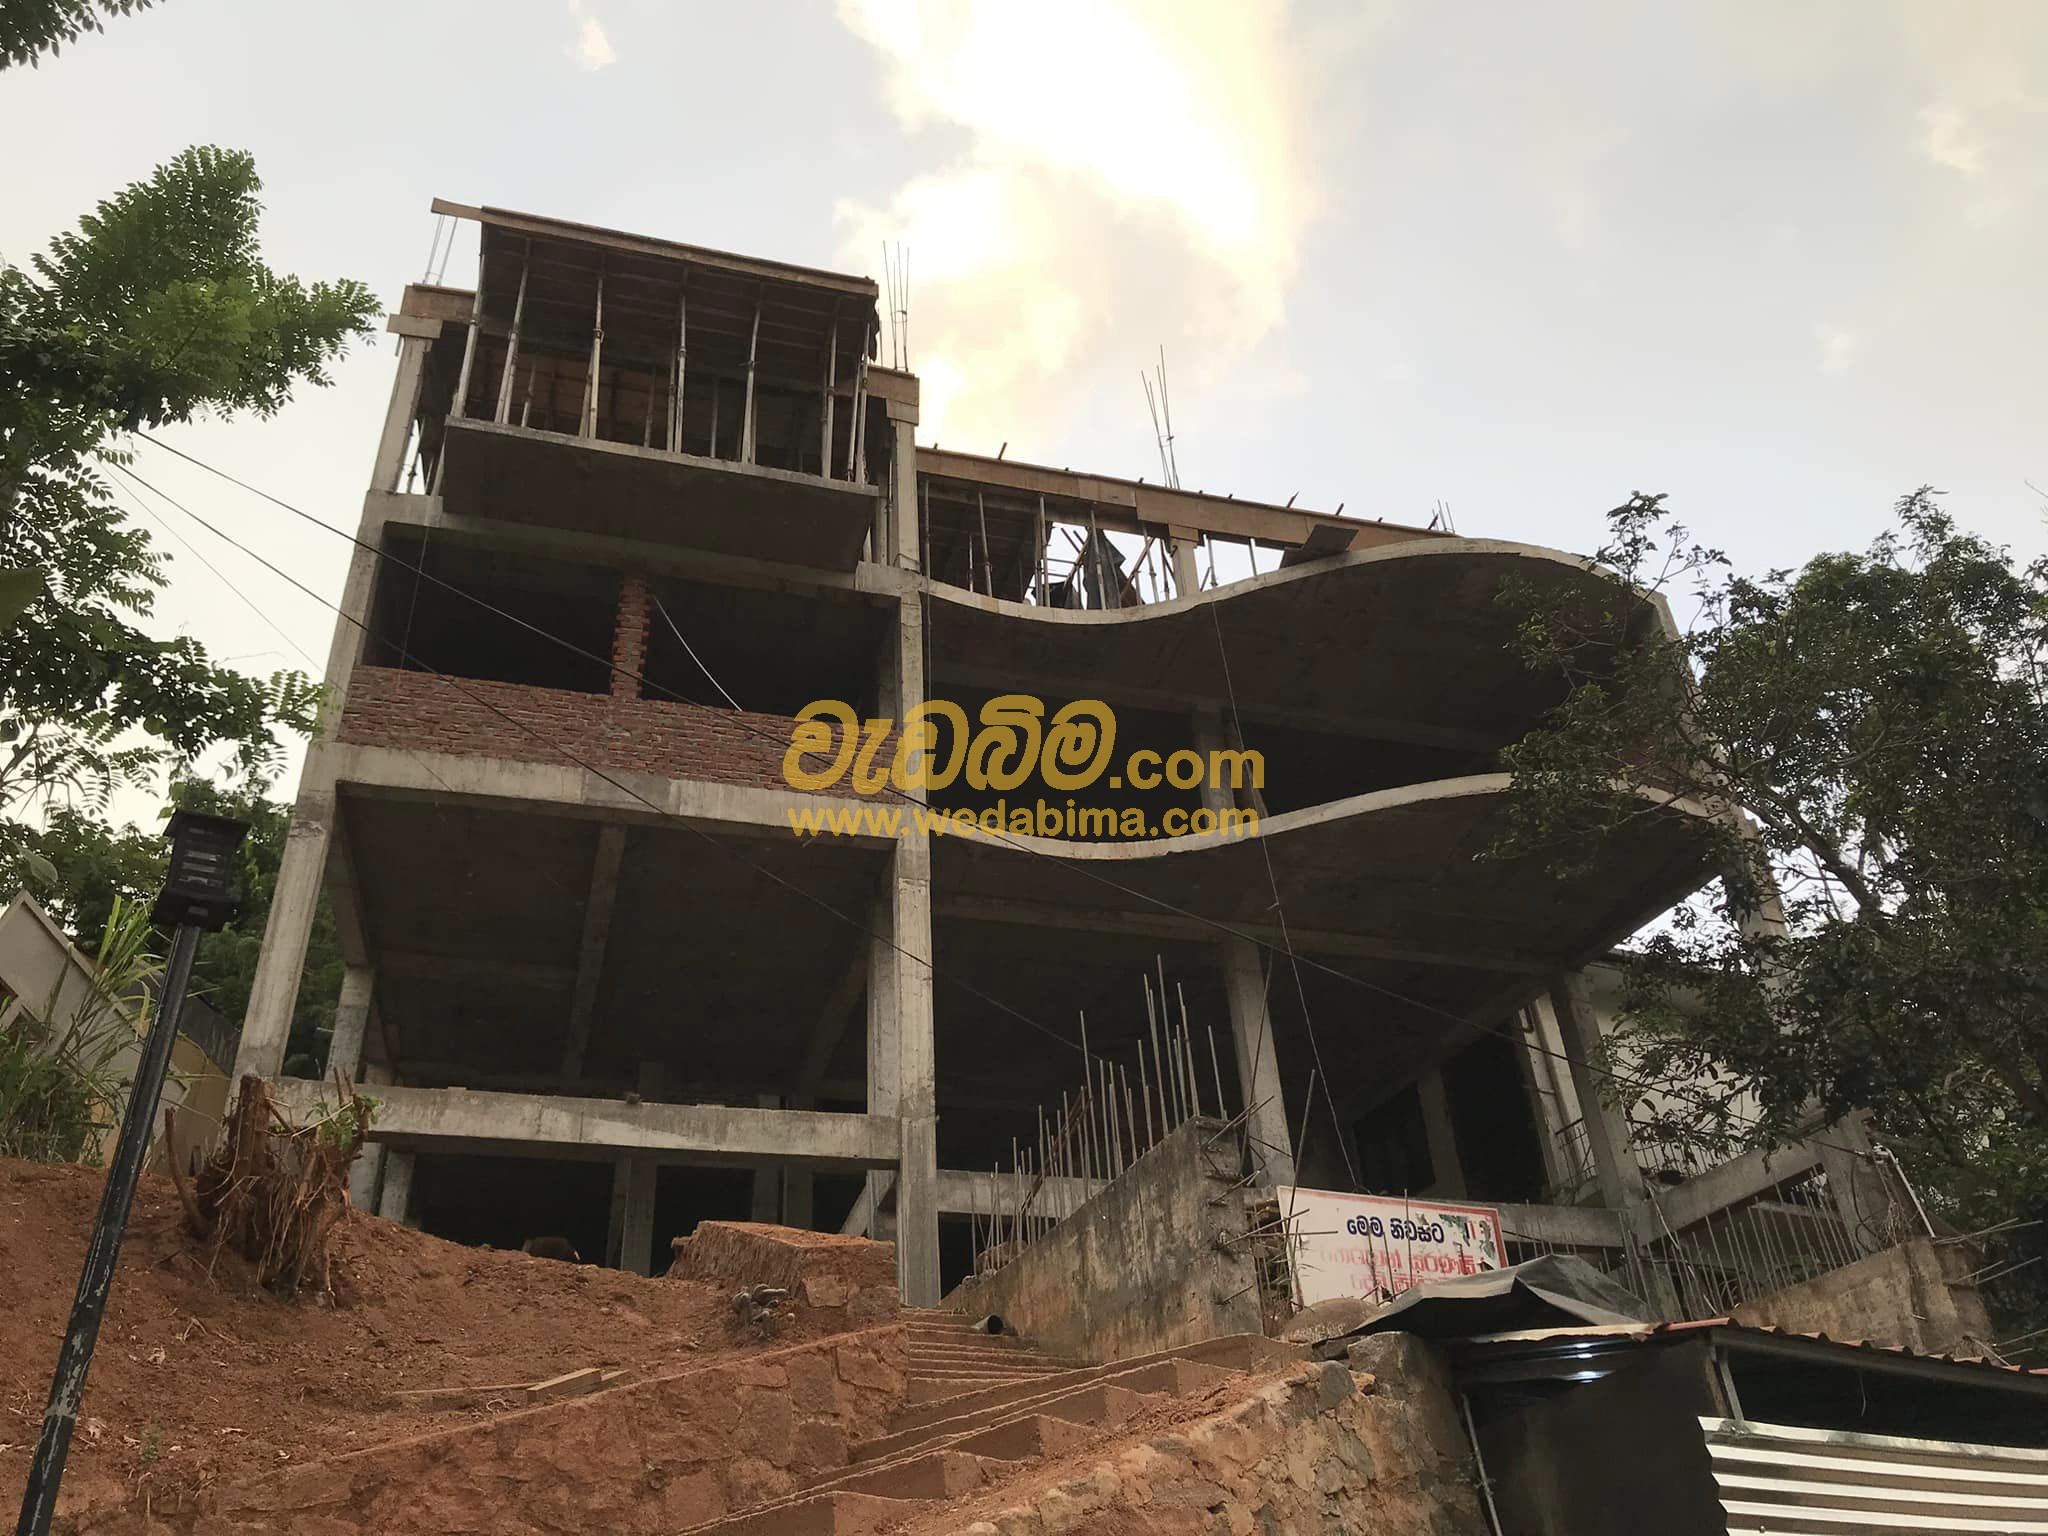 House Construction Company Sri Lanka